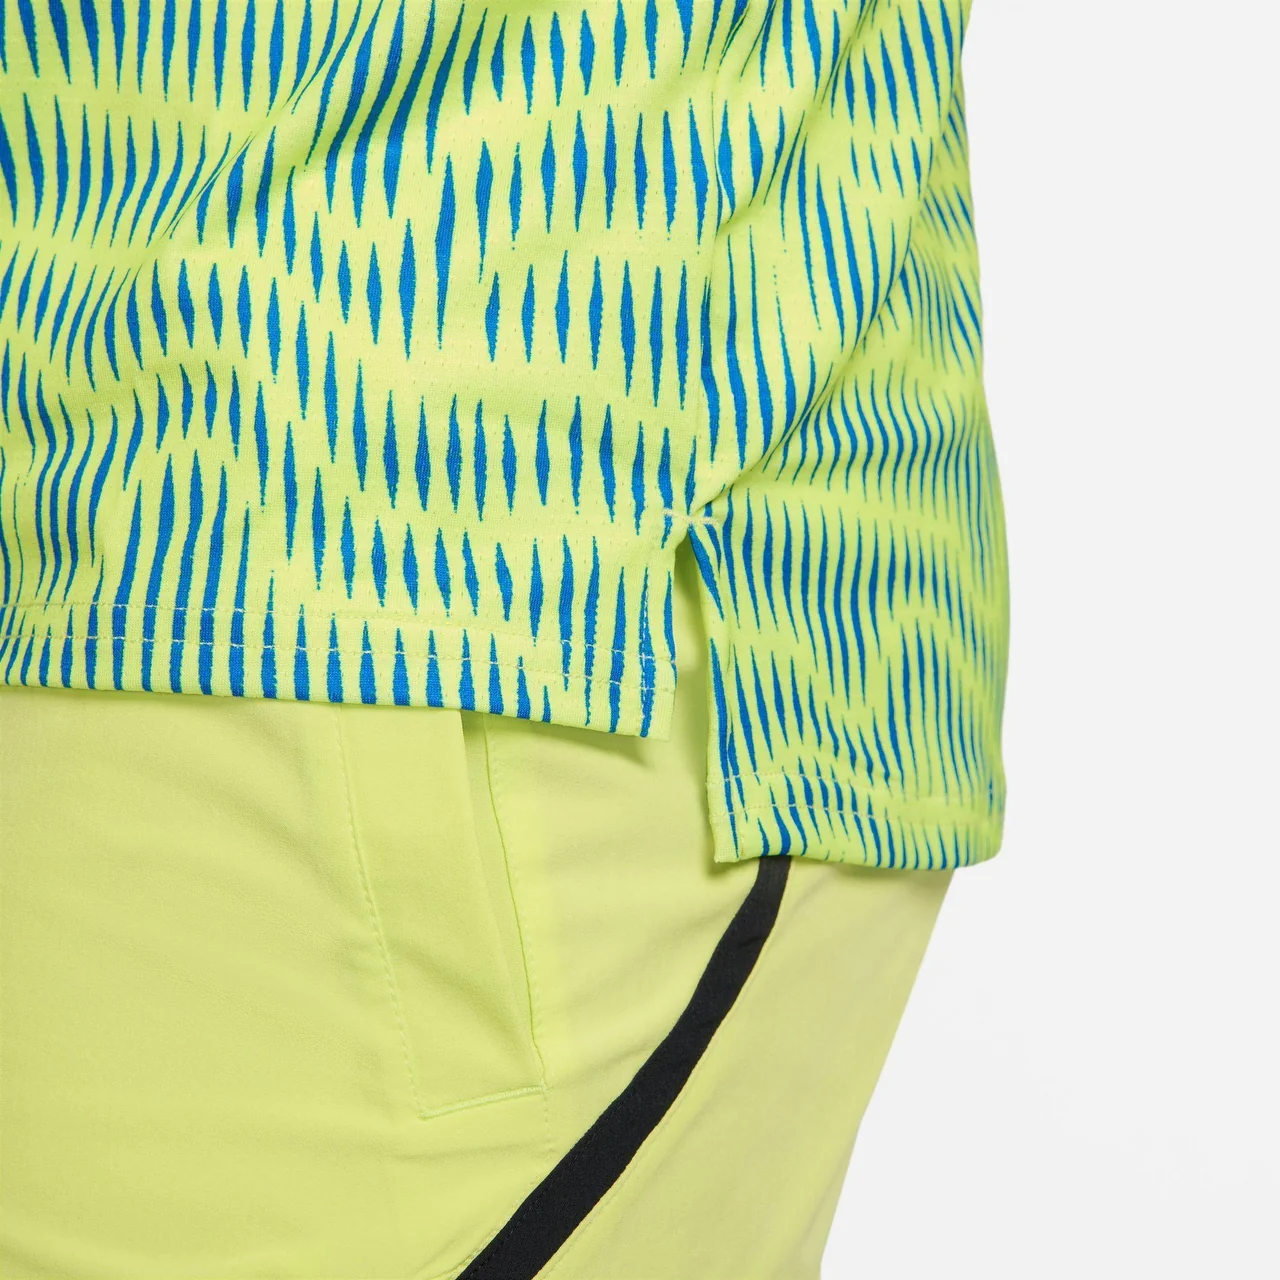 Nike Court Advantage T-skjorte Lys sitron